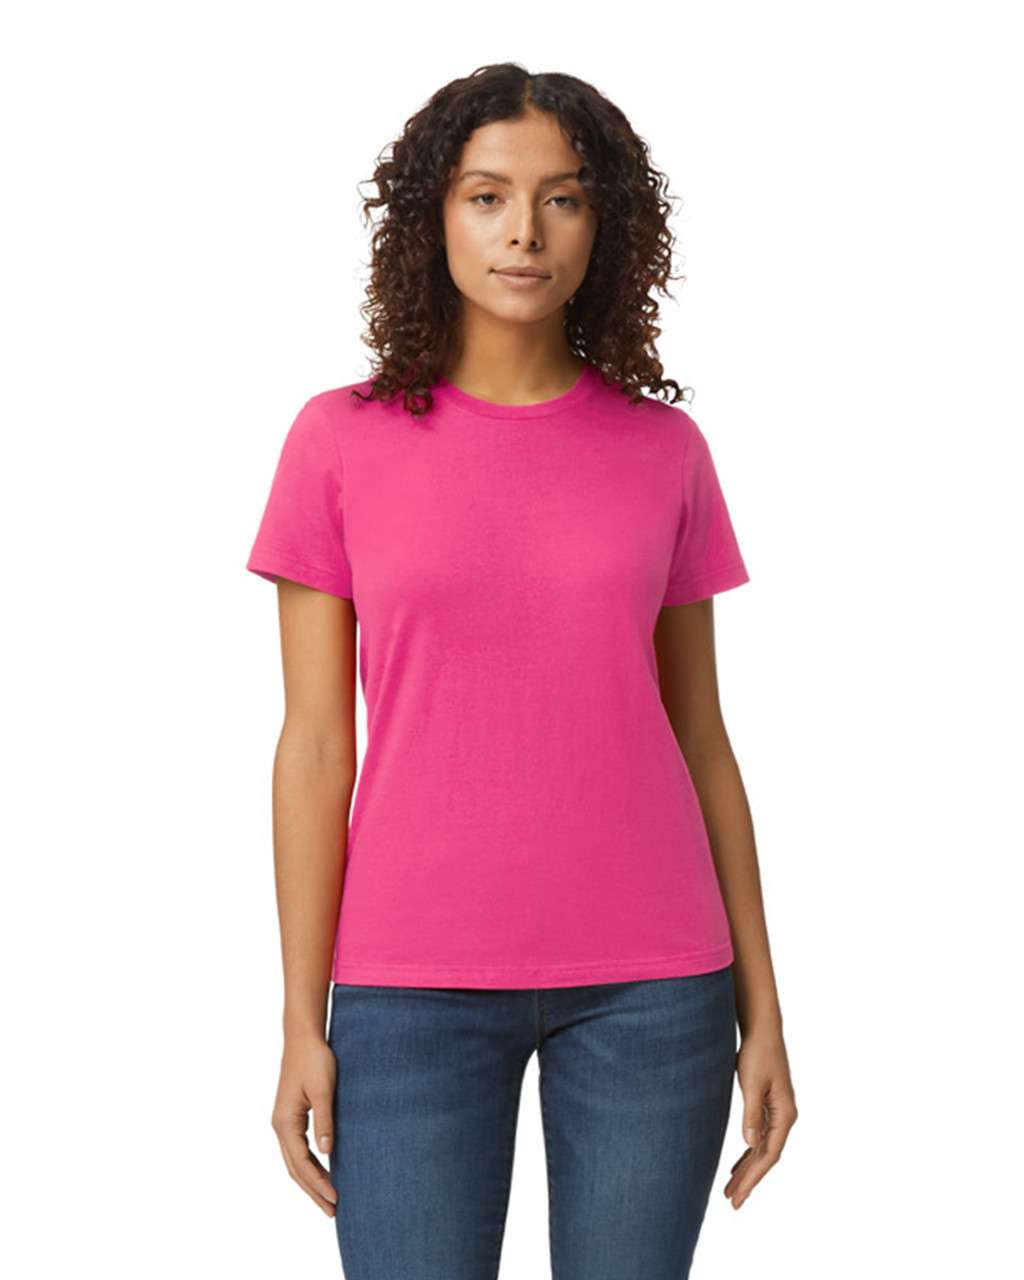 Gildan Softstyle® Midweight Women's T-shirt - Rosa